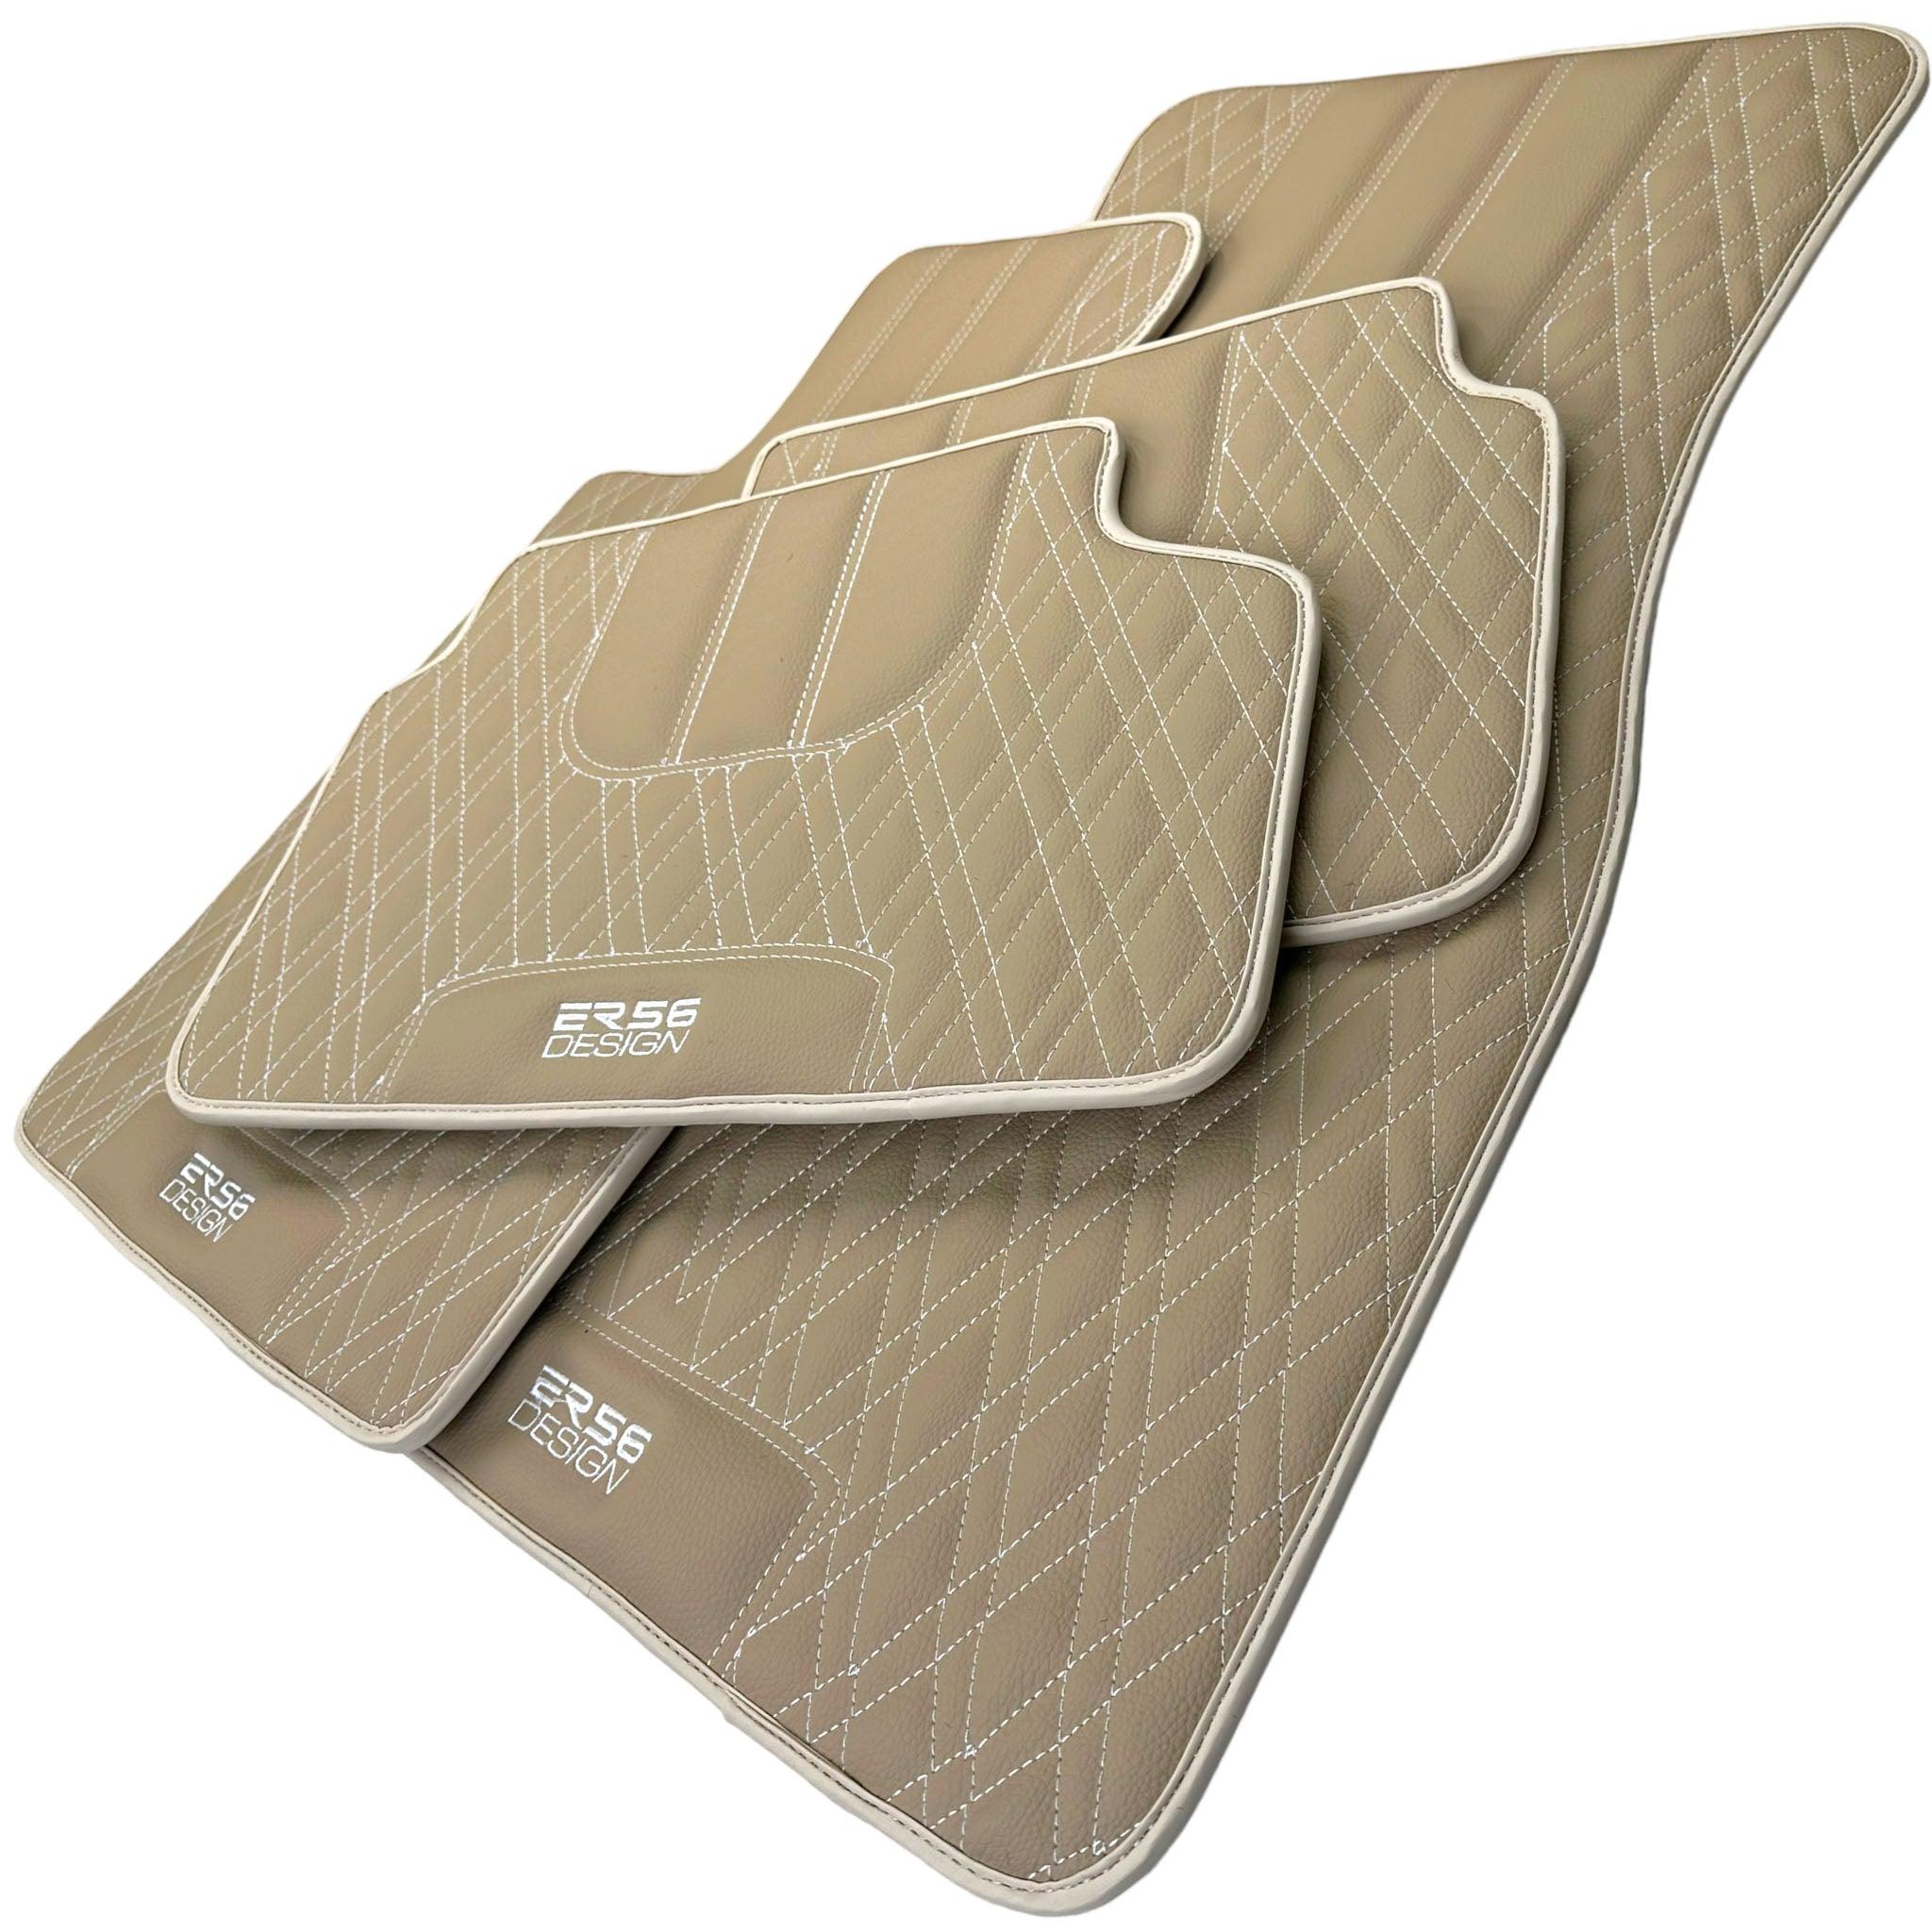 Beige Leather Floor Floor Mats For BMW 1 Series E82